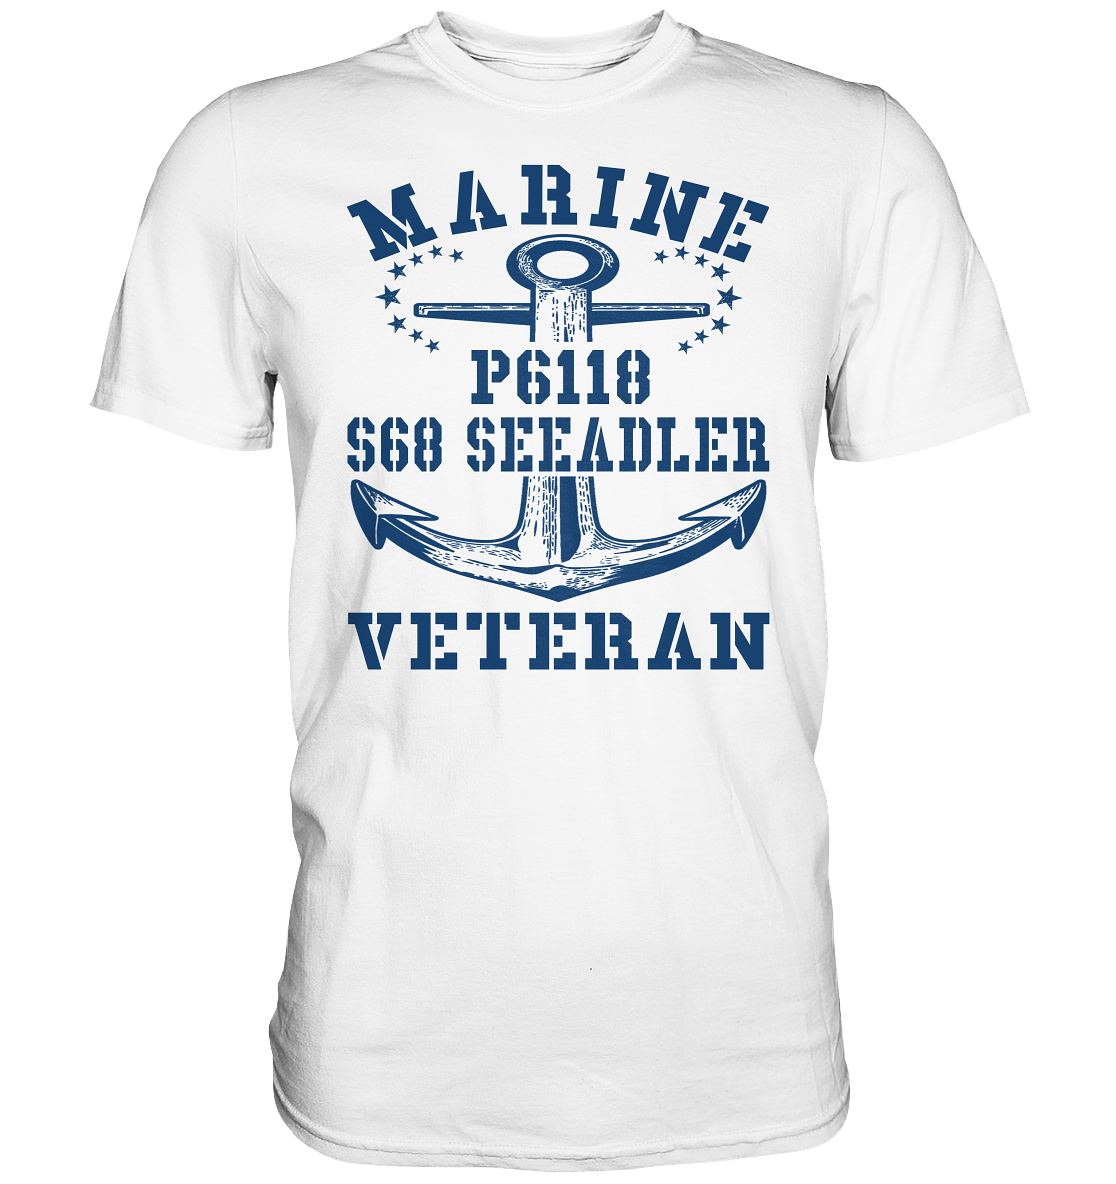 FK-Schnellboot P6118 SEEADLER Marine Veteran - Premium Shirt